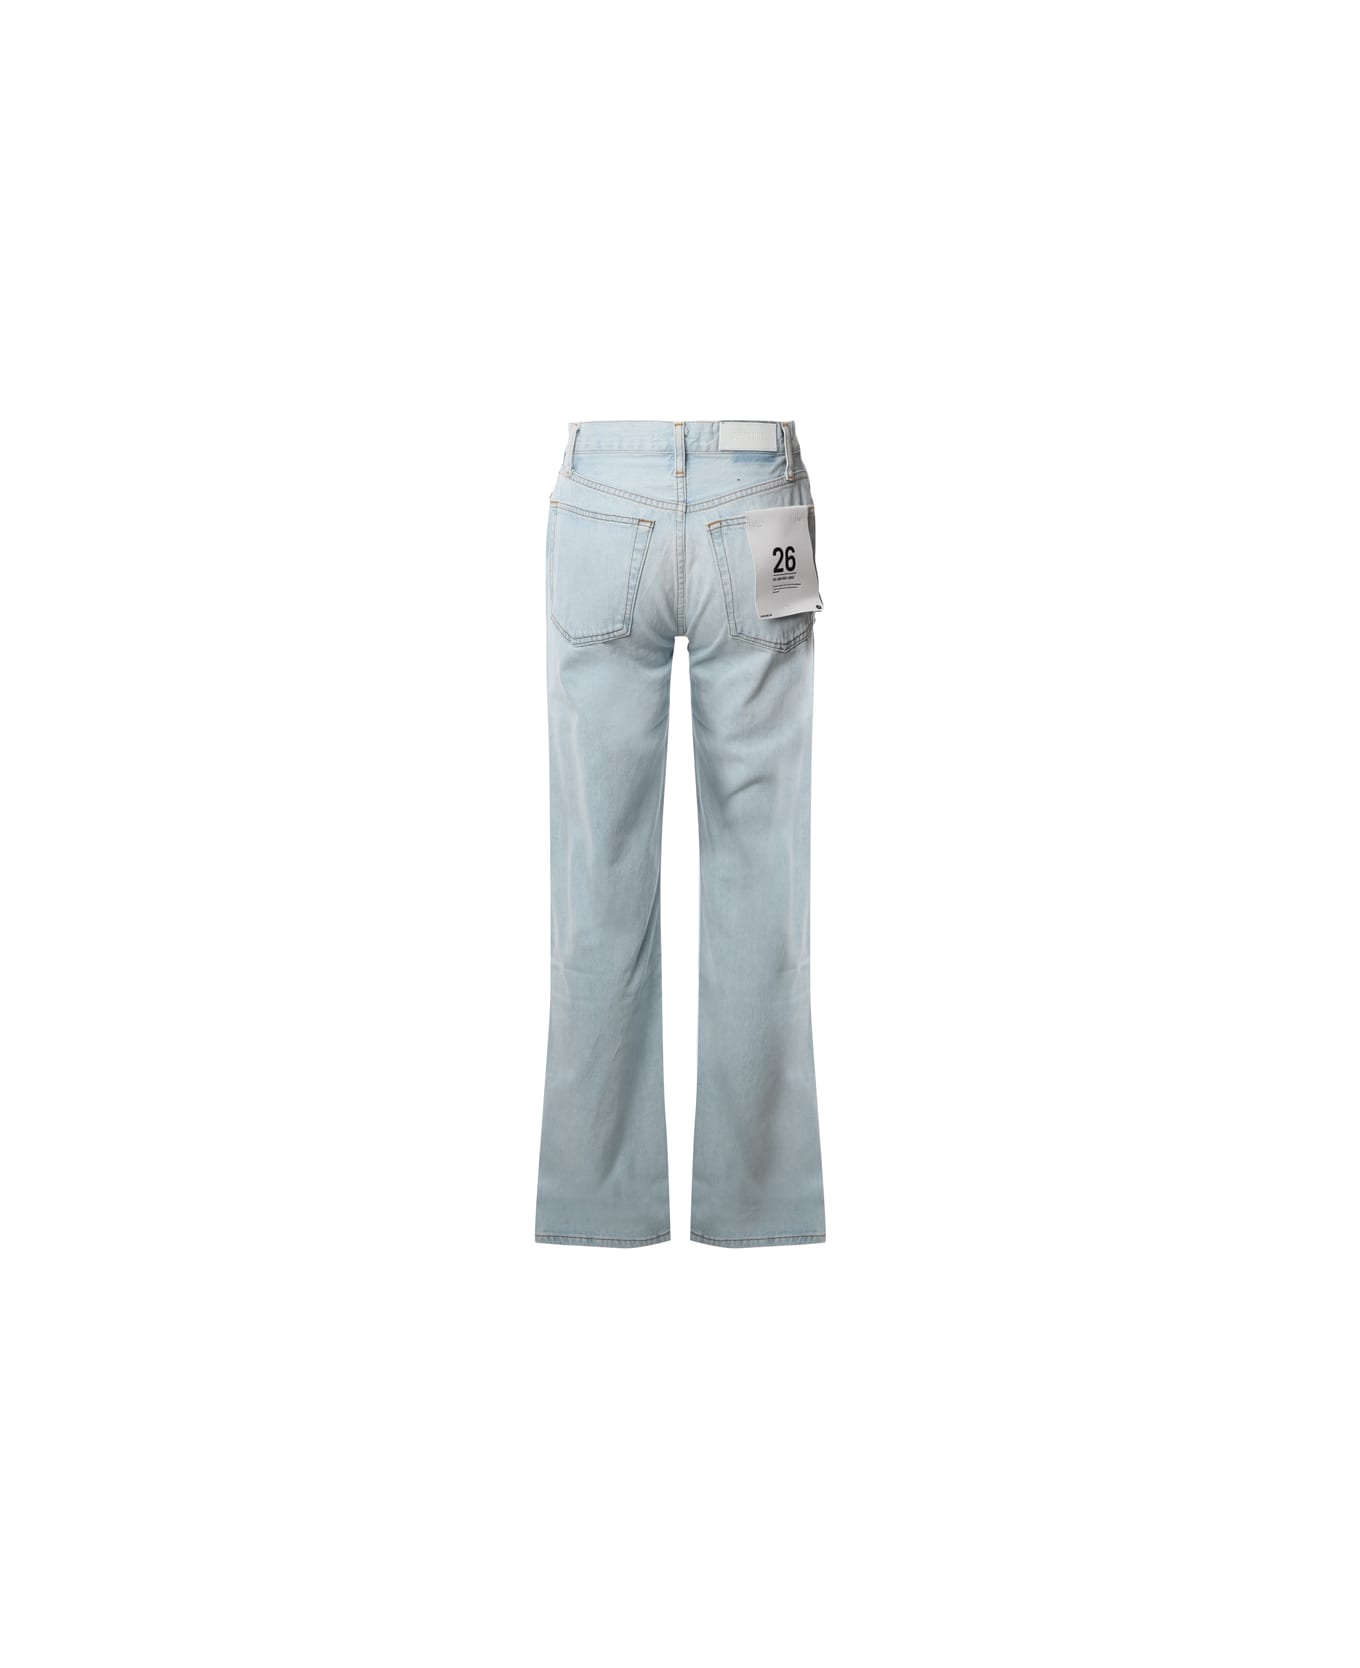 RE/DONE Regular Fit Jeans - Light blue